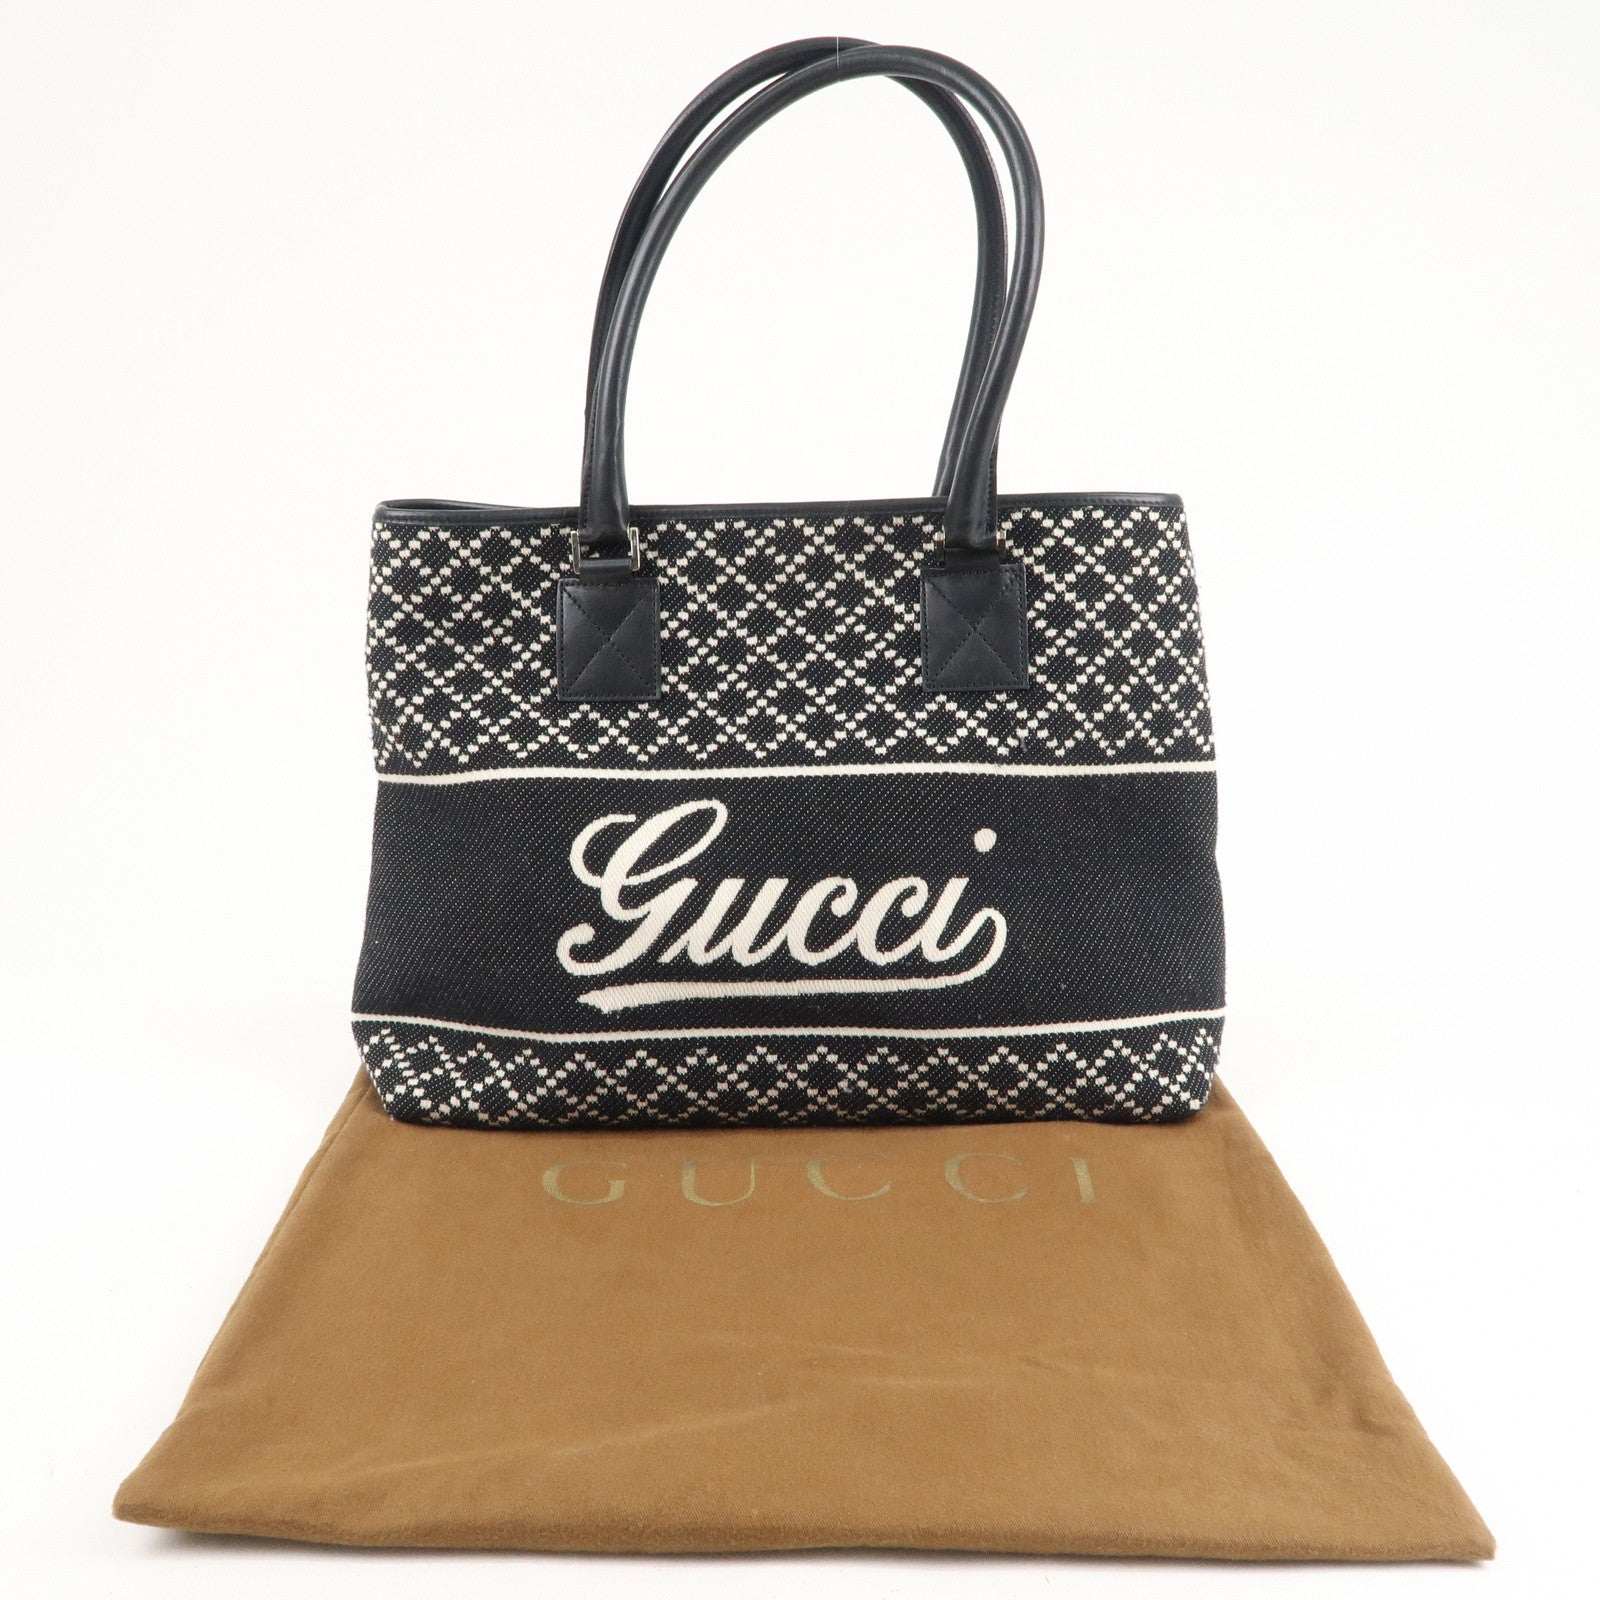 Gucci Beige/Black Diamante Canvas and Leather Medium Sukey Tote